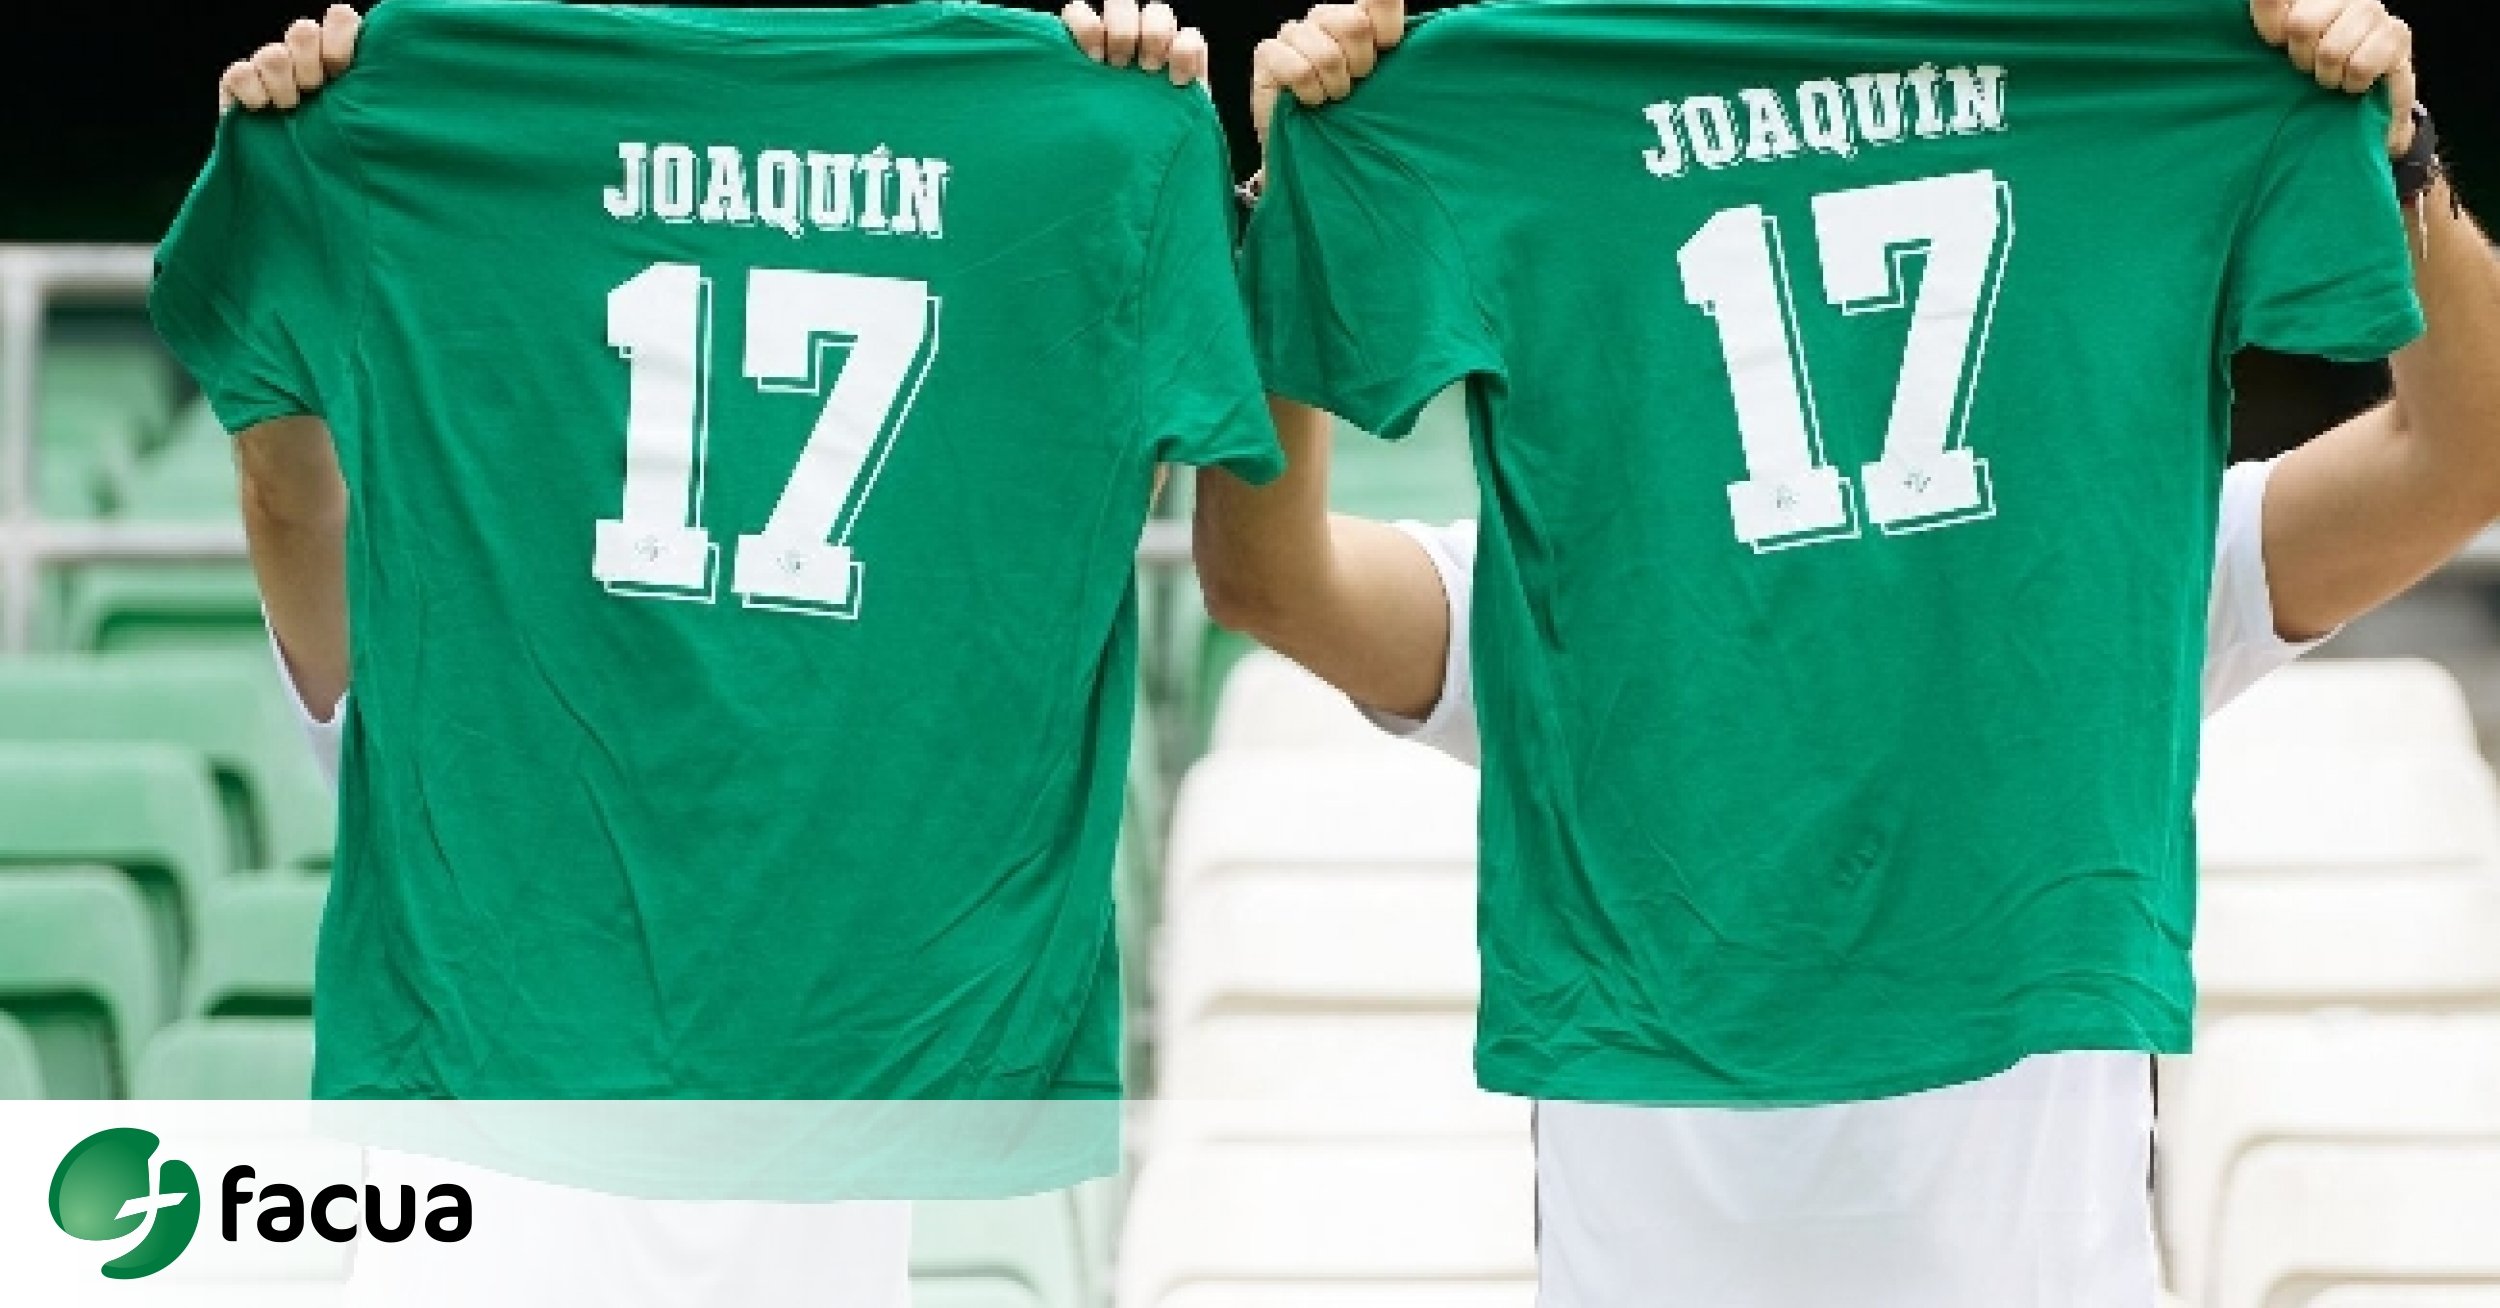 FACUA Sevilla insta al Betis a entregar la camiseta de homenaje a Joaquín a los asistentes partido